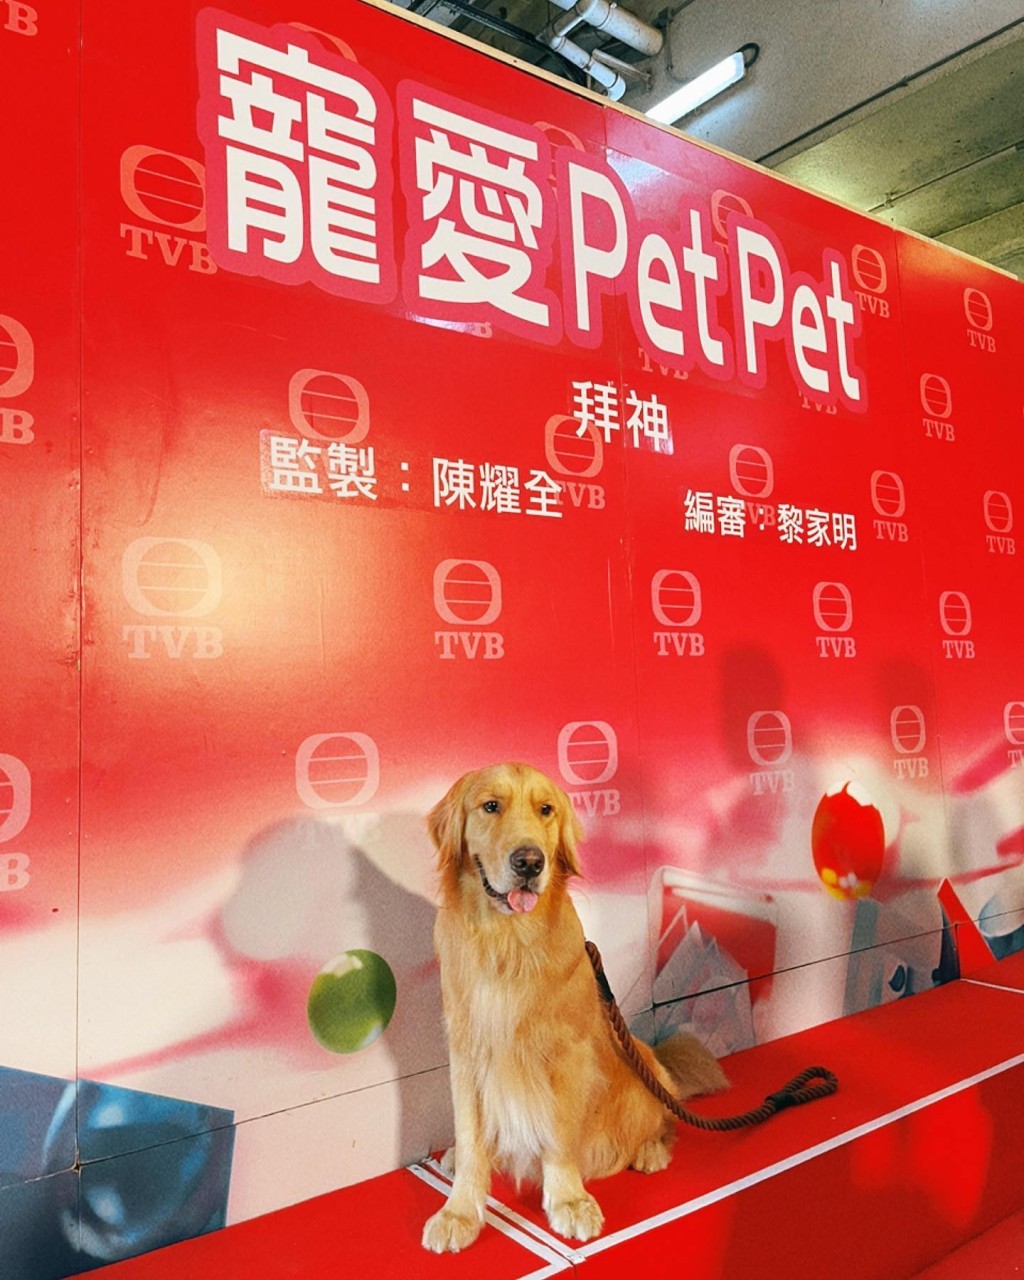 「冬甩」早前更于TVB剧集《宠爱Pet Pet》中做「男主角」Romeo。